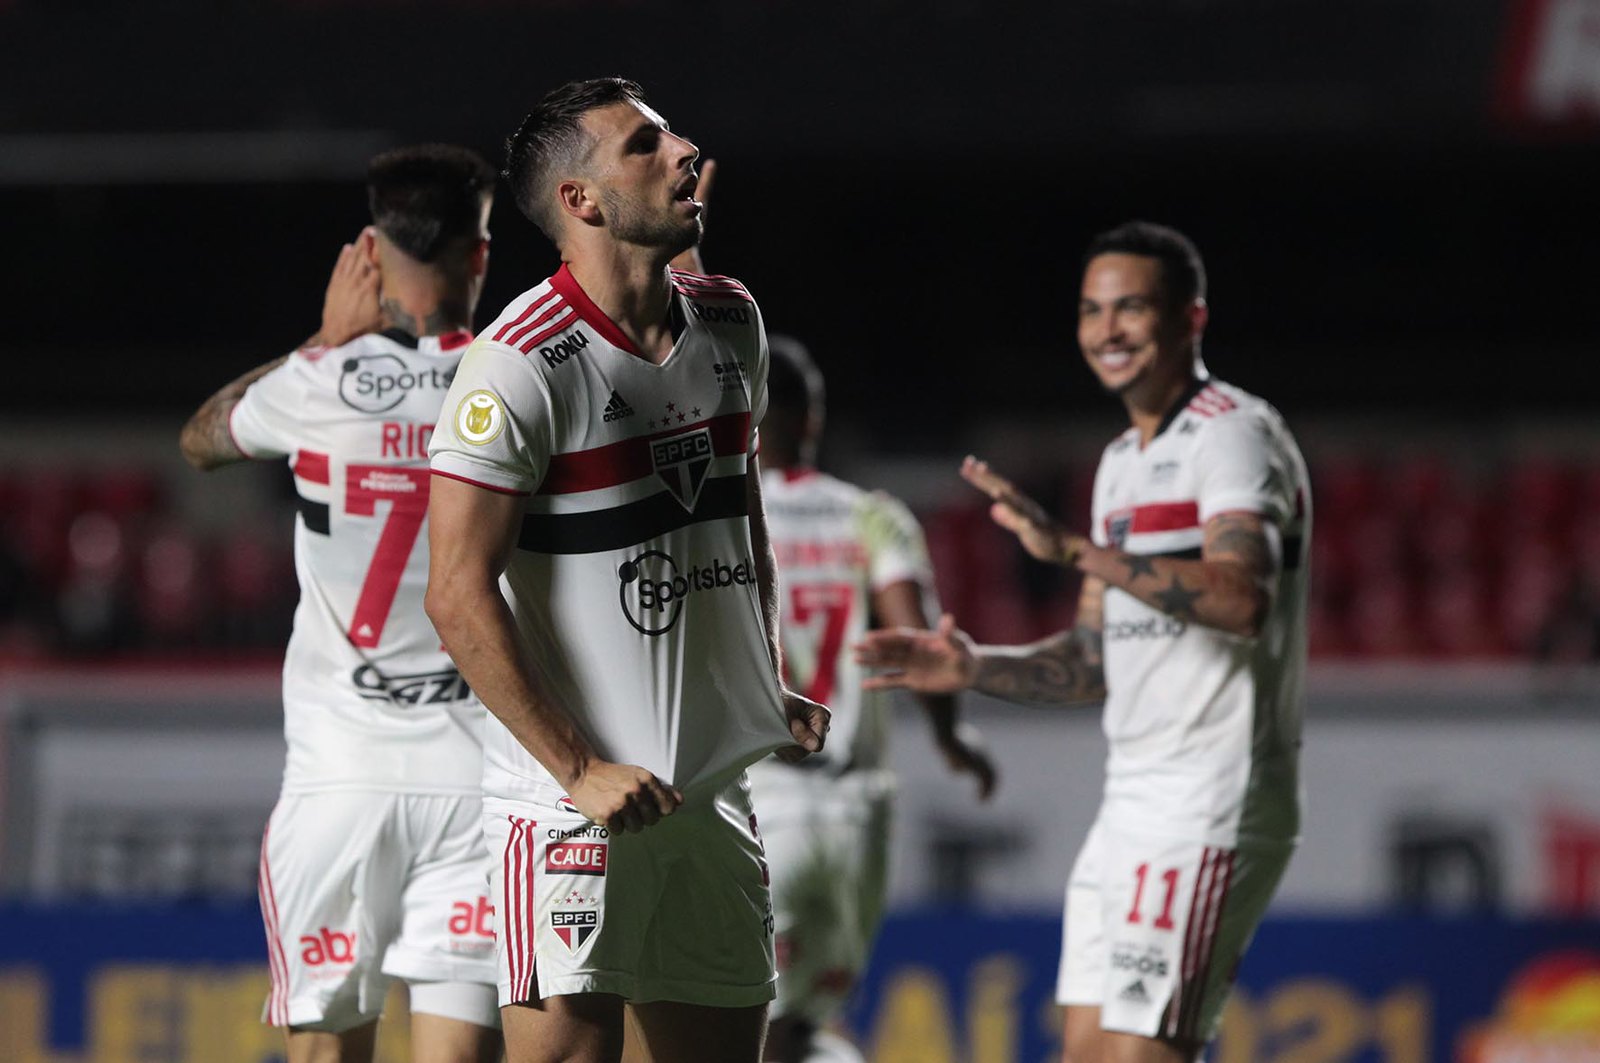 Autor do gol contra o Santos, Calleri ressalta: 'estamos fazendo o melhor pelo São Paulo'